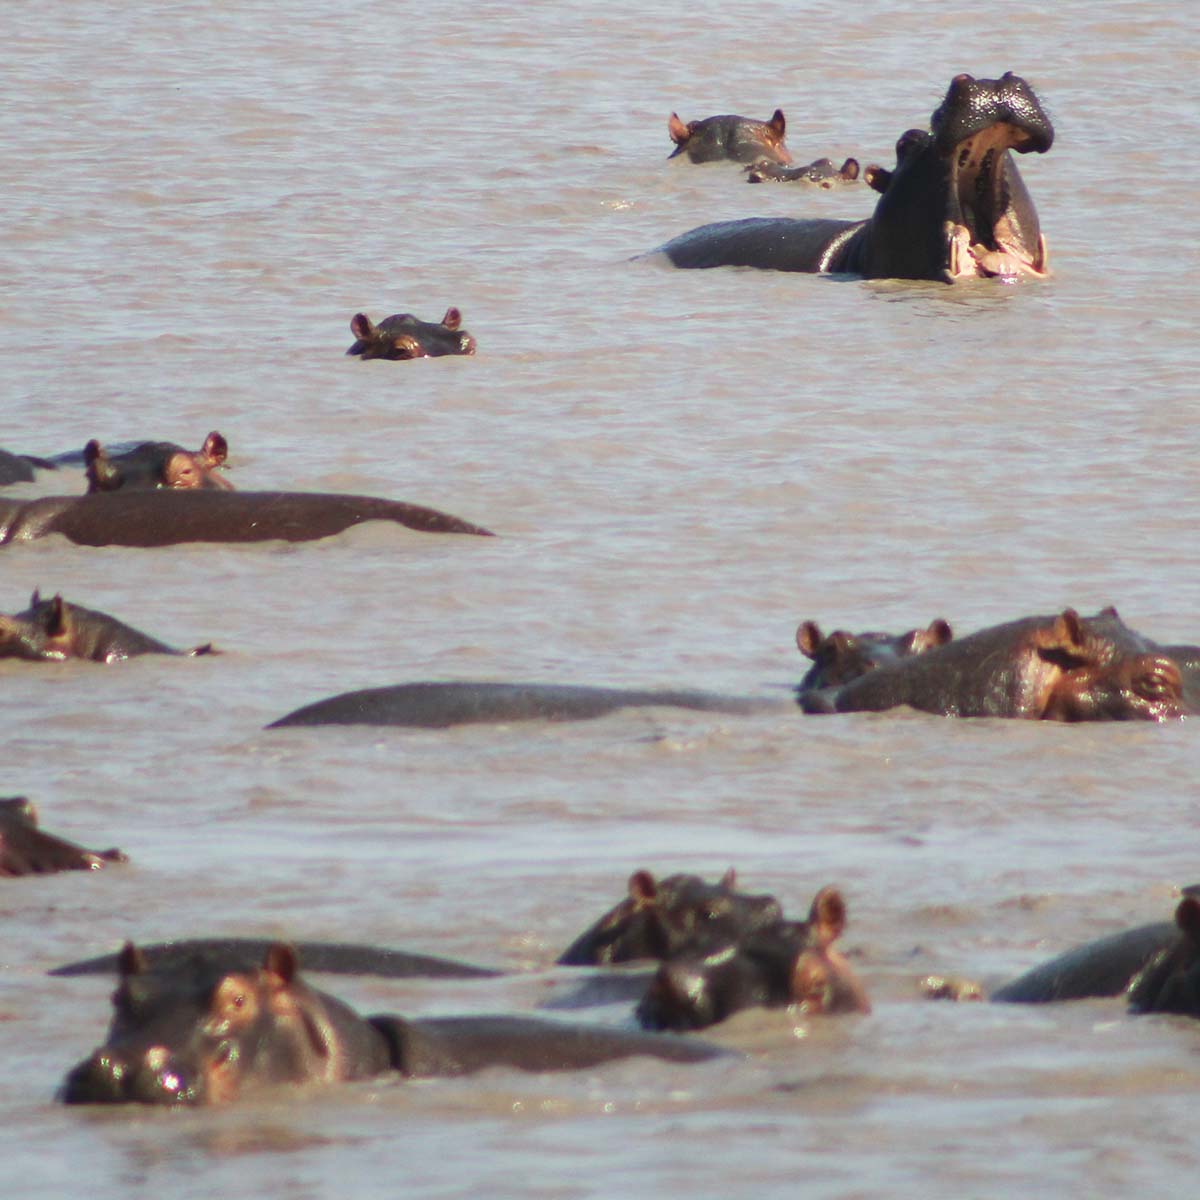 les hippopotames du parc national de Katavi en Tanzanie